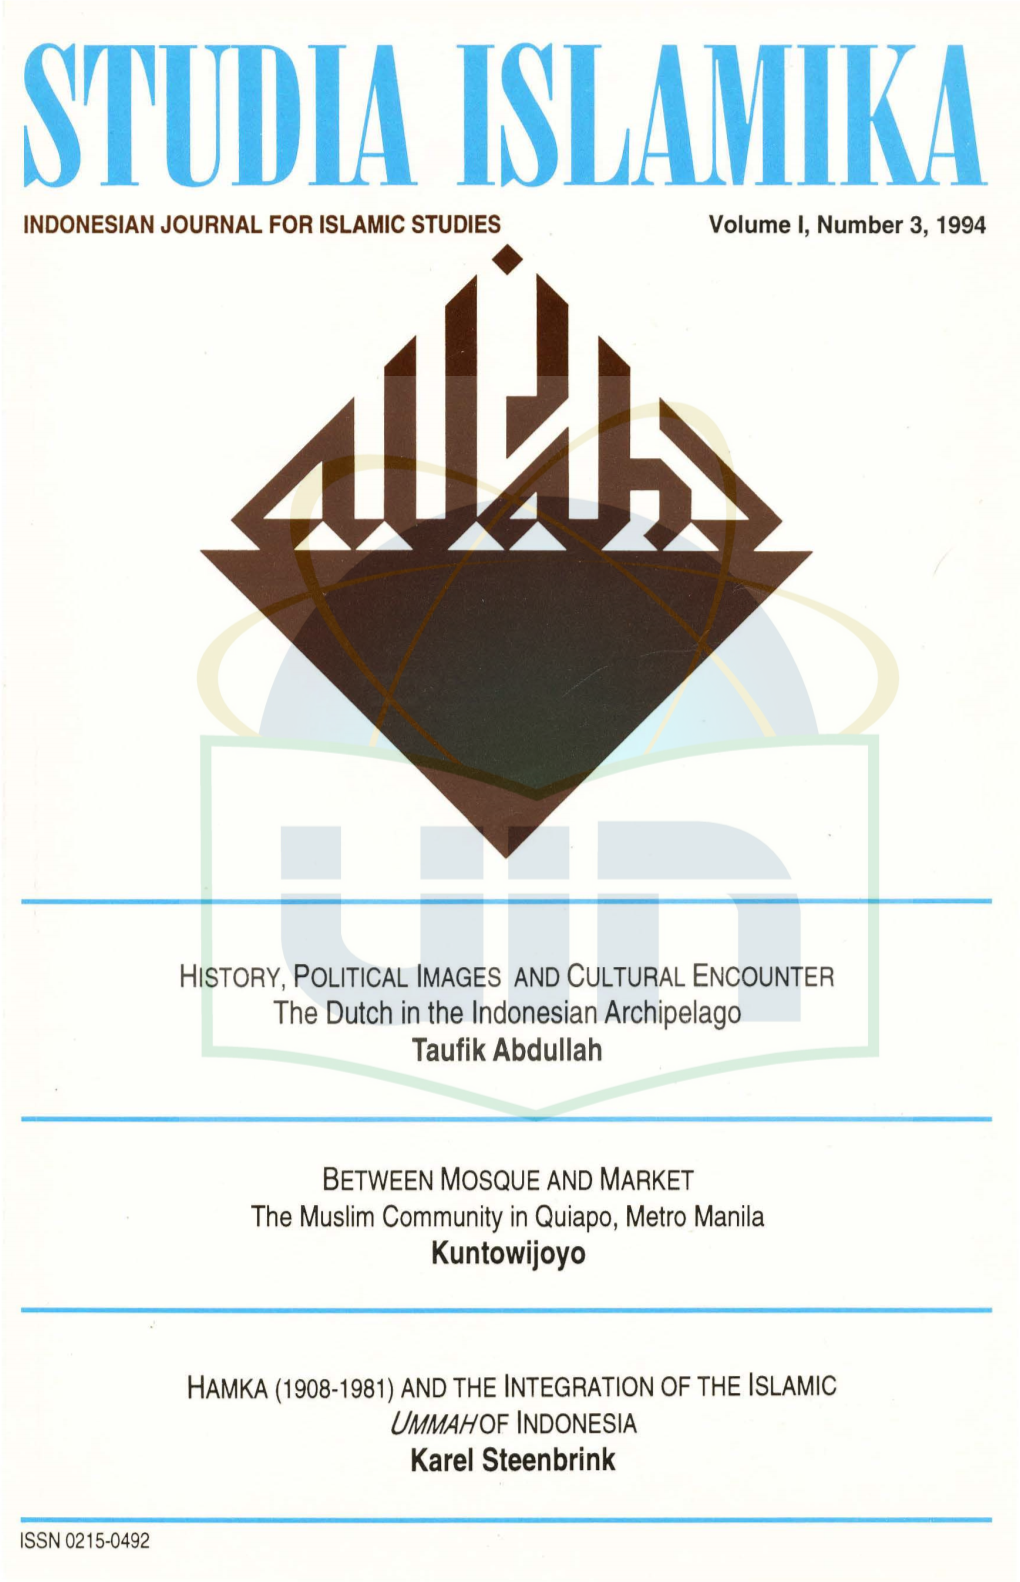 STUD La ISLAMIKA INDONESIAN JOURNAL for ISLAMIC STUDIES• Volume I, Number 3, 1994